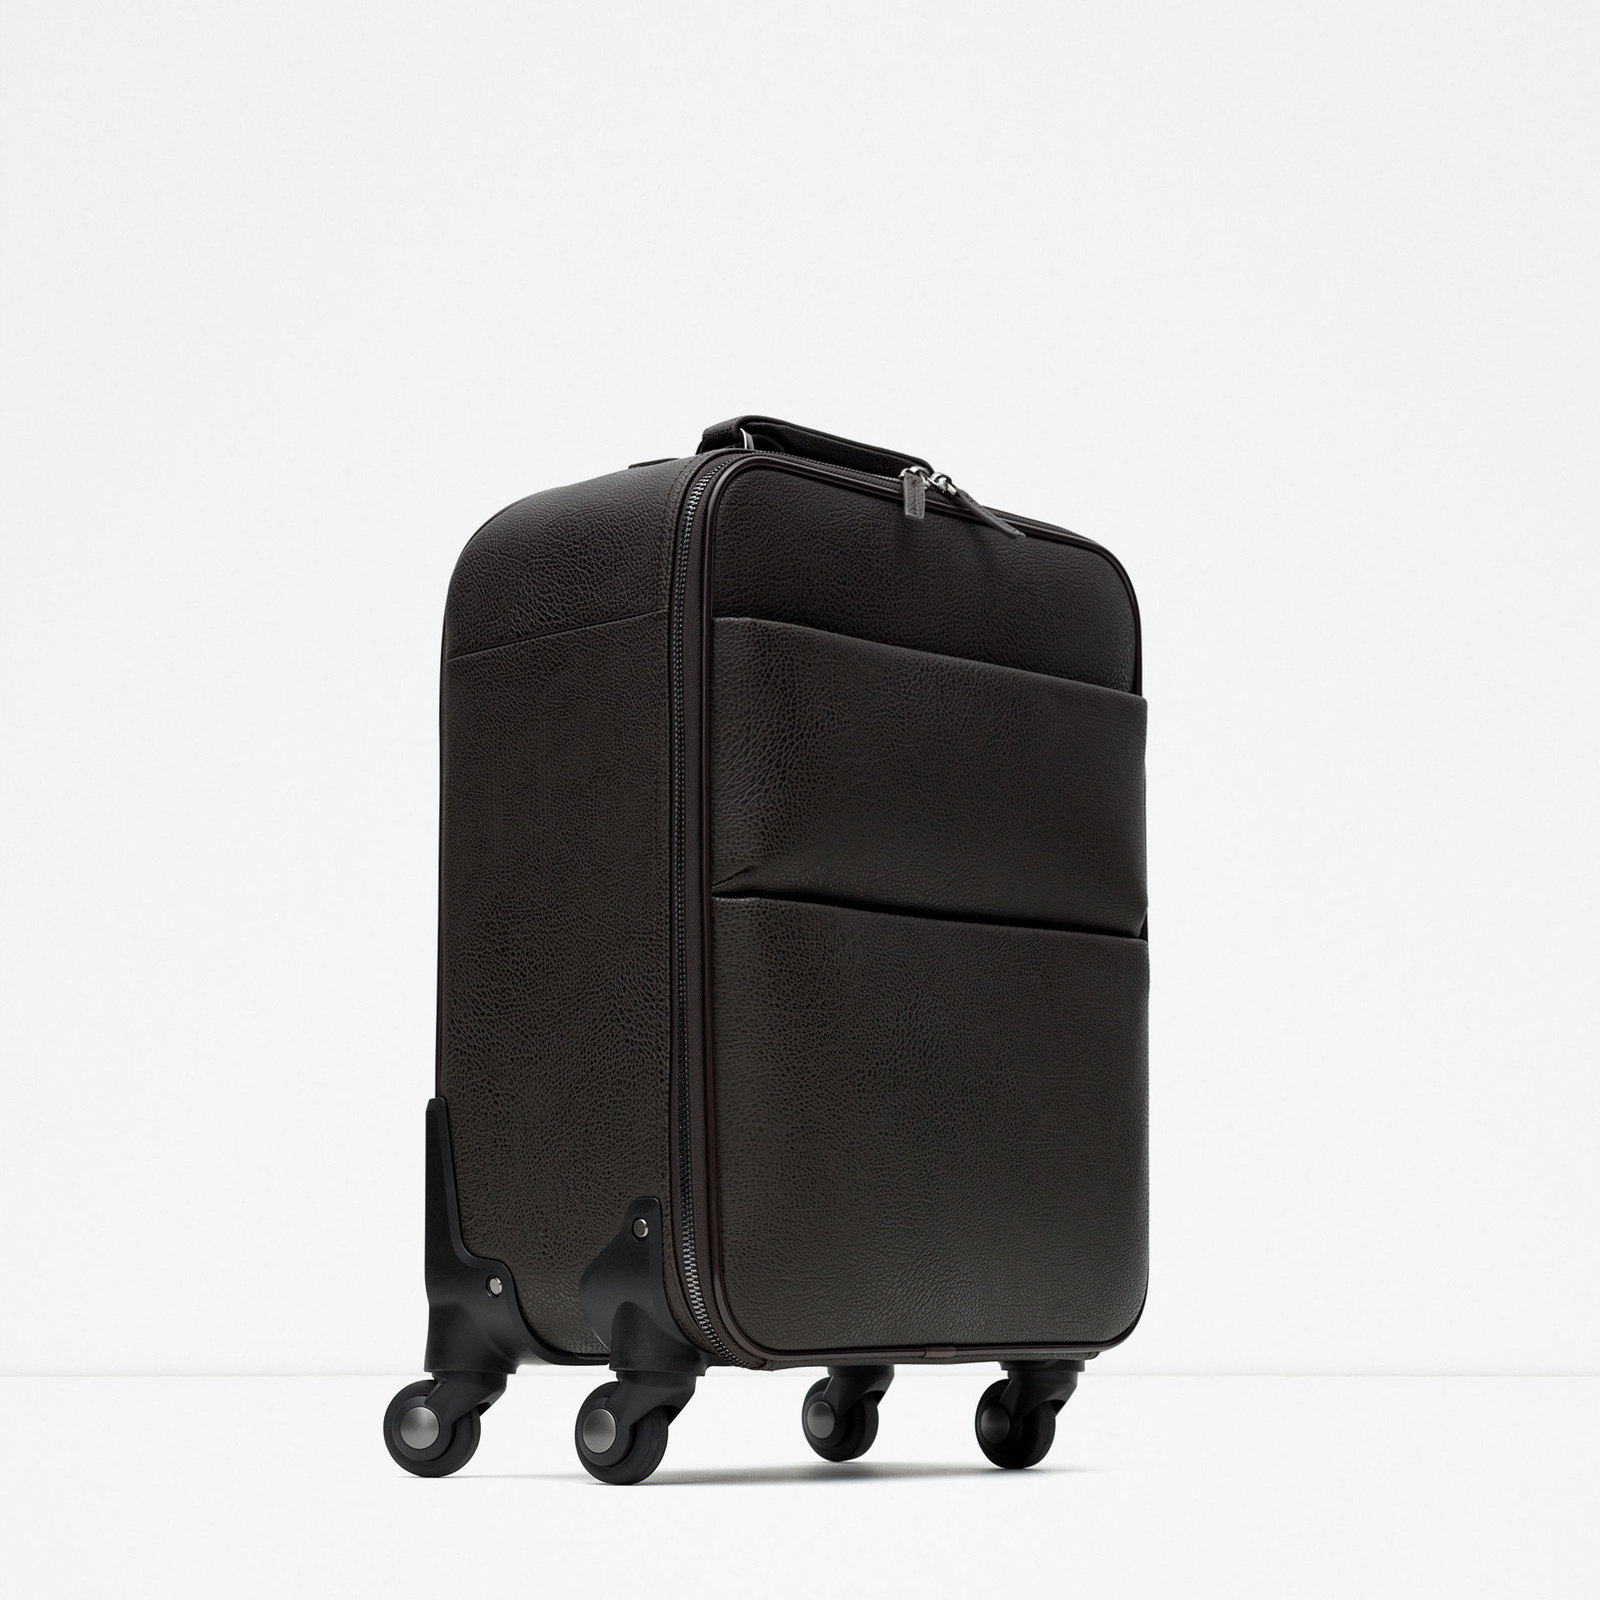 Zara ízléses dombor mintás bőrönd 2015 fotója